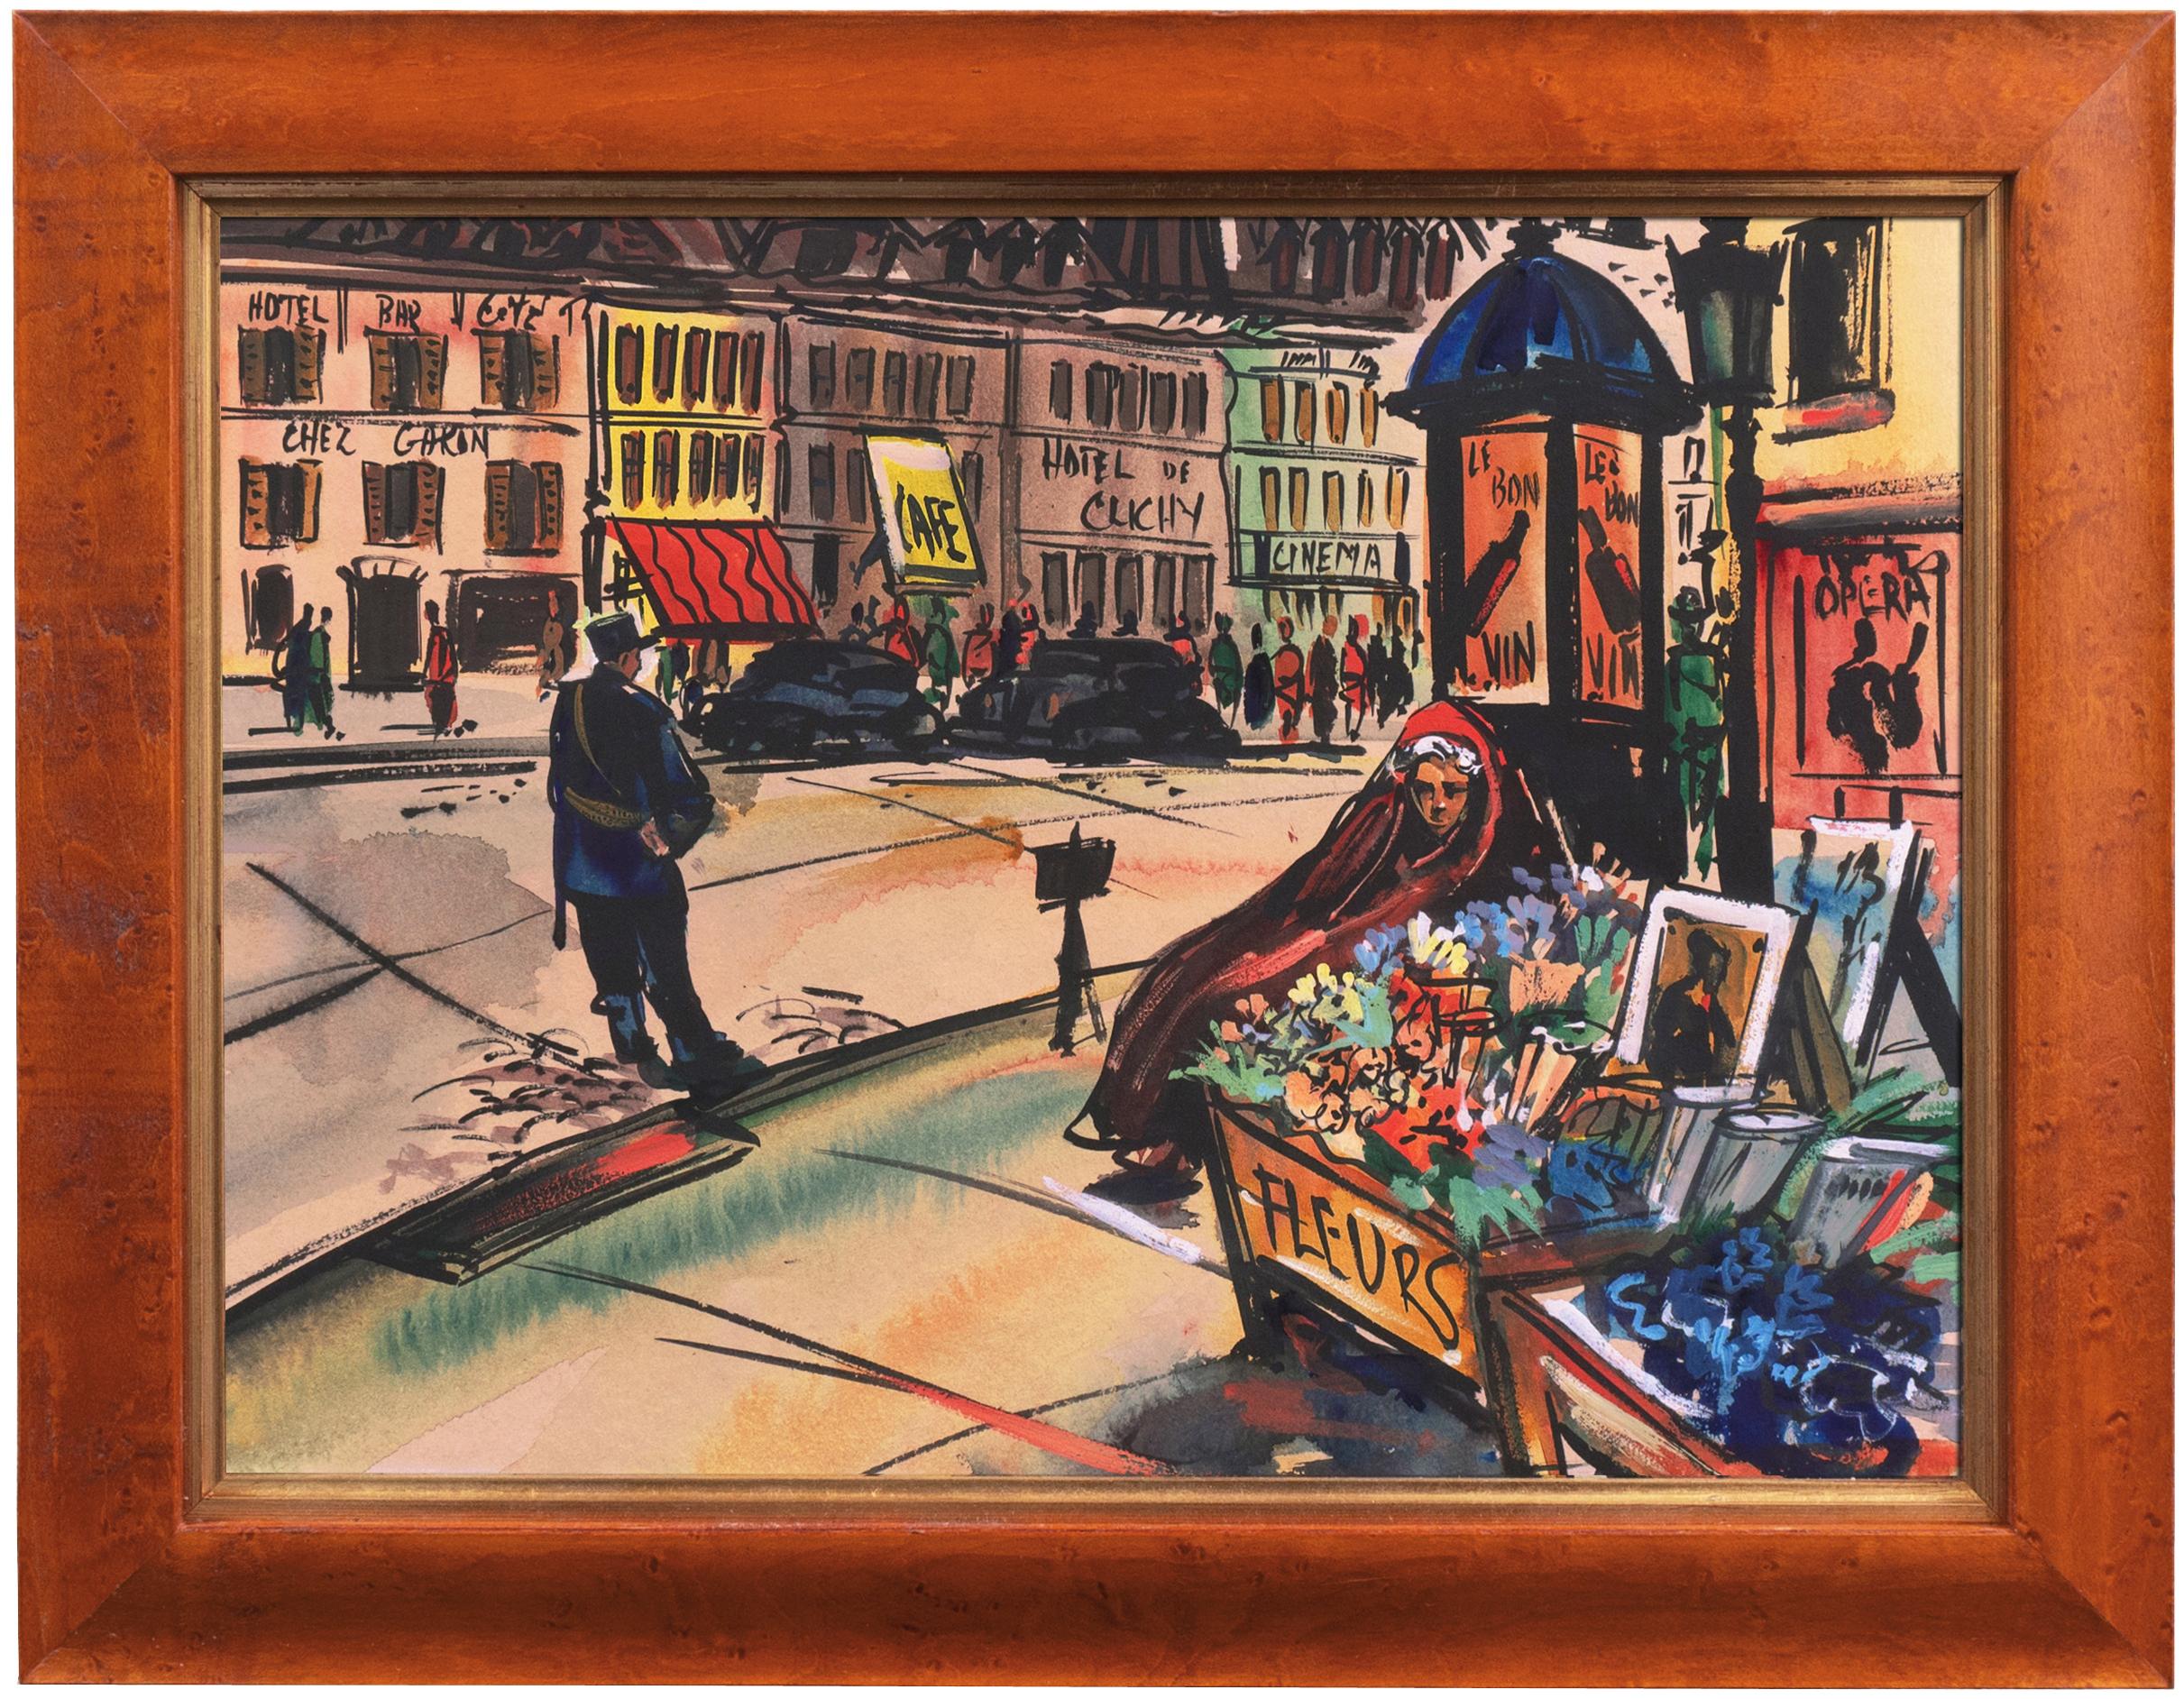 Vendeur de fleurs à Clichy, vendeur de rue parisien, post-impressionniste français - Art de 20th Century French School